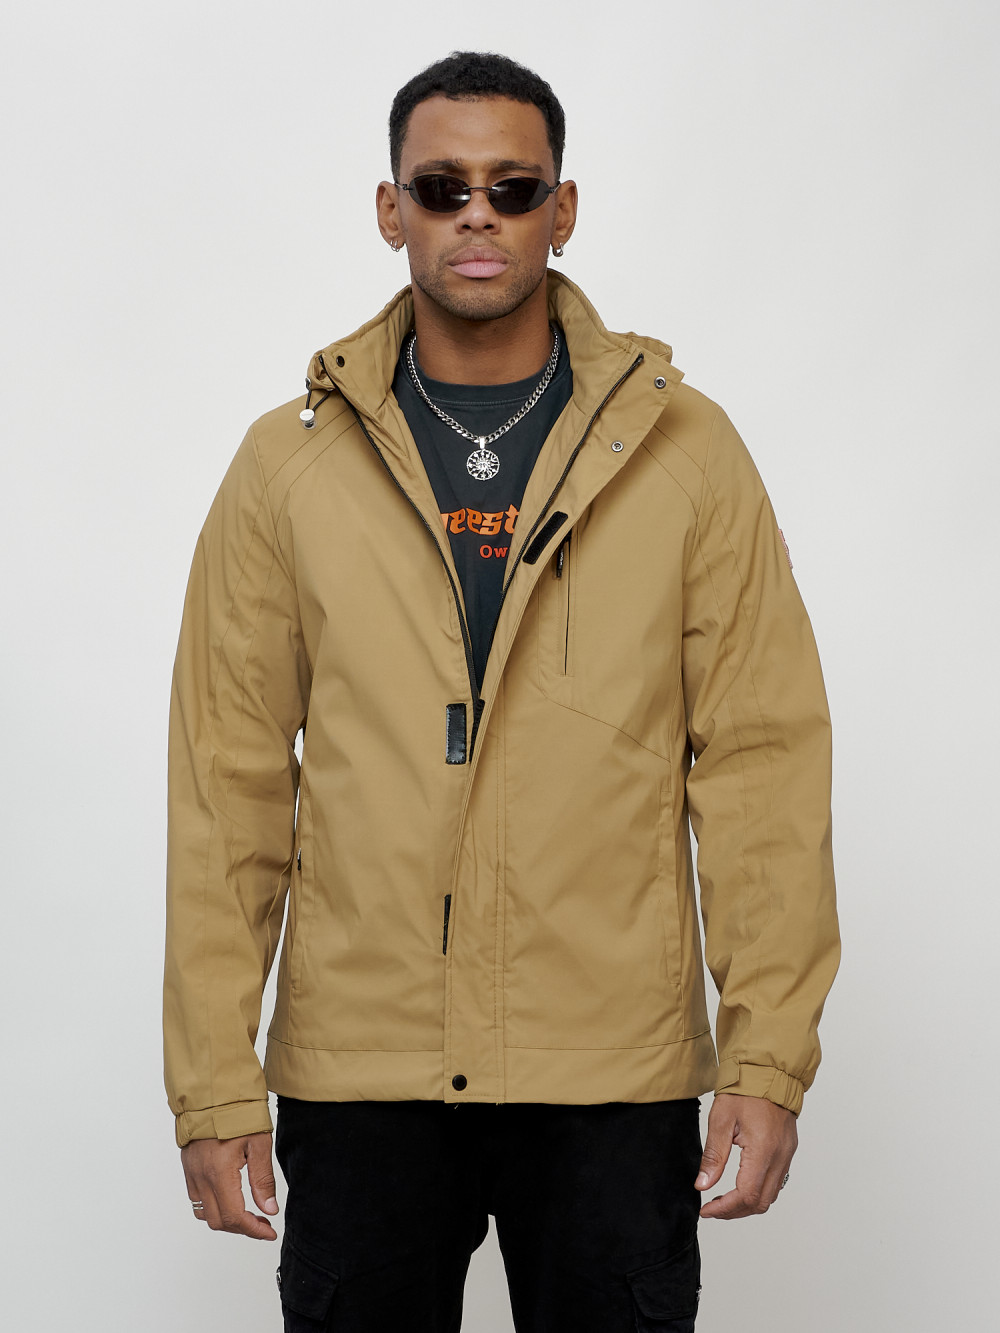 Купить оптом Куртка спортивная мужская весенняя с капюшоном бежевого цвета 88022B в Екатеринбурге